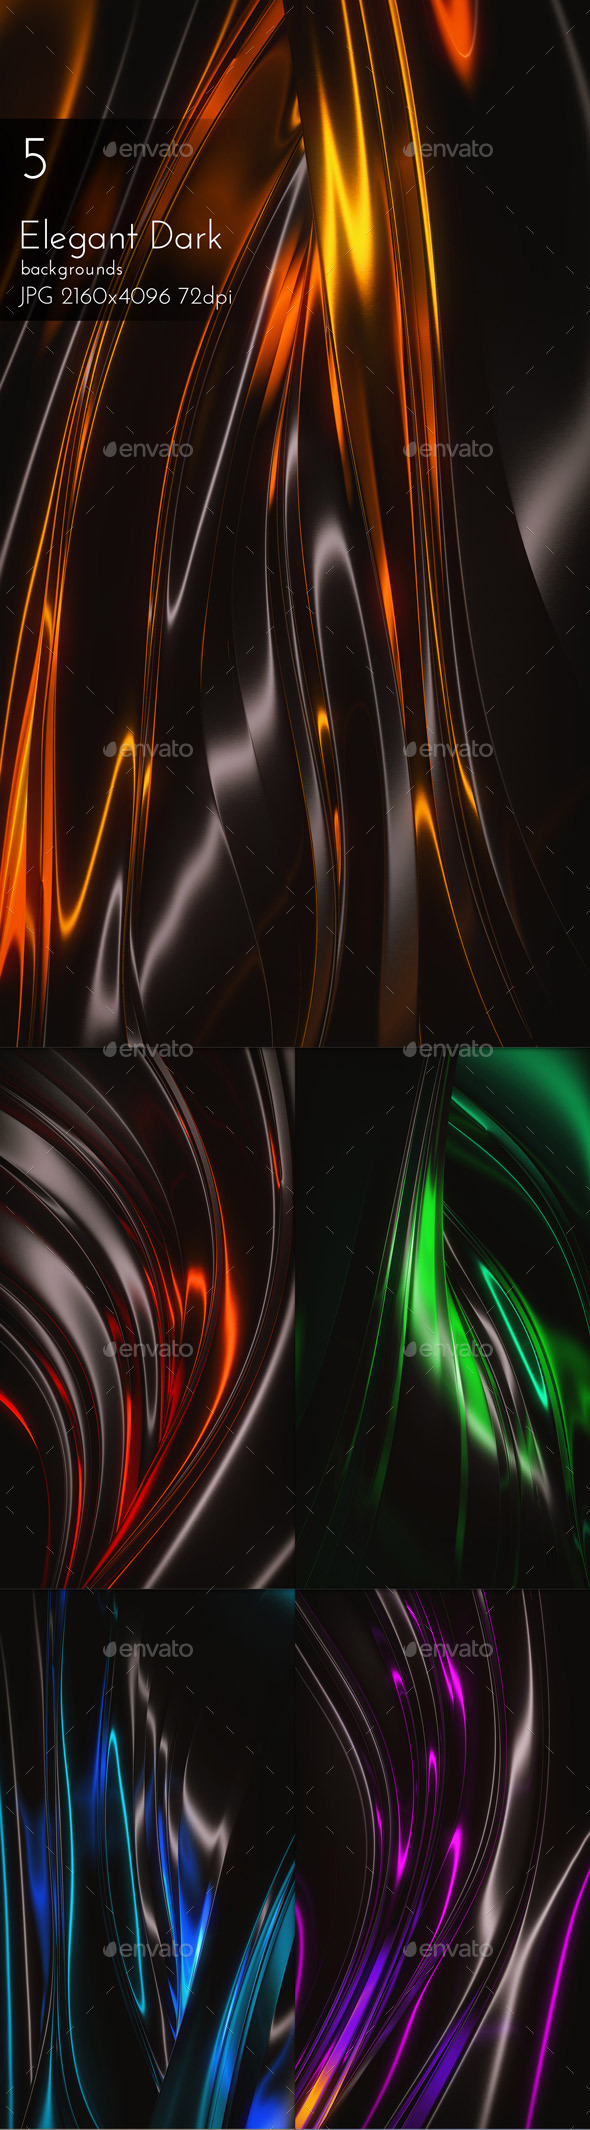 Elegant Dark Background By Cinema4design Graphicriver